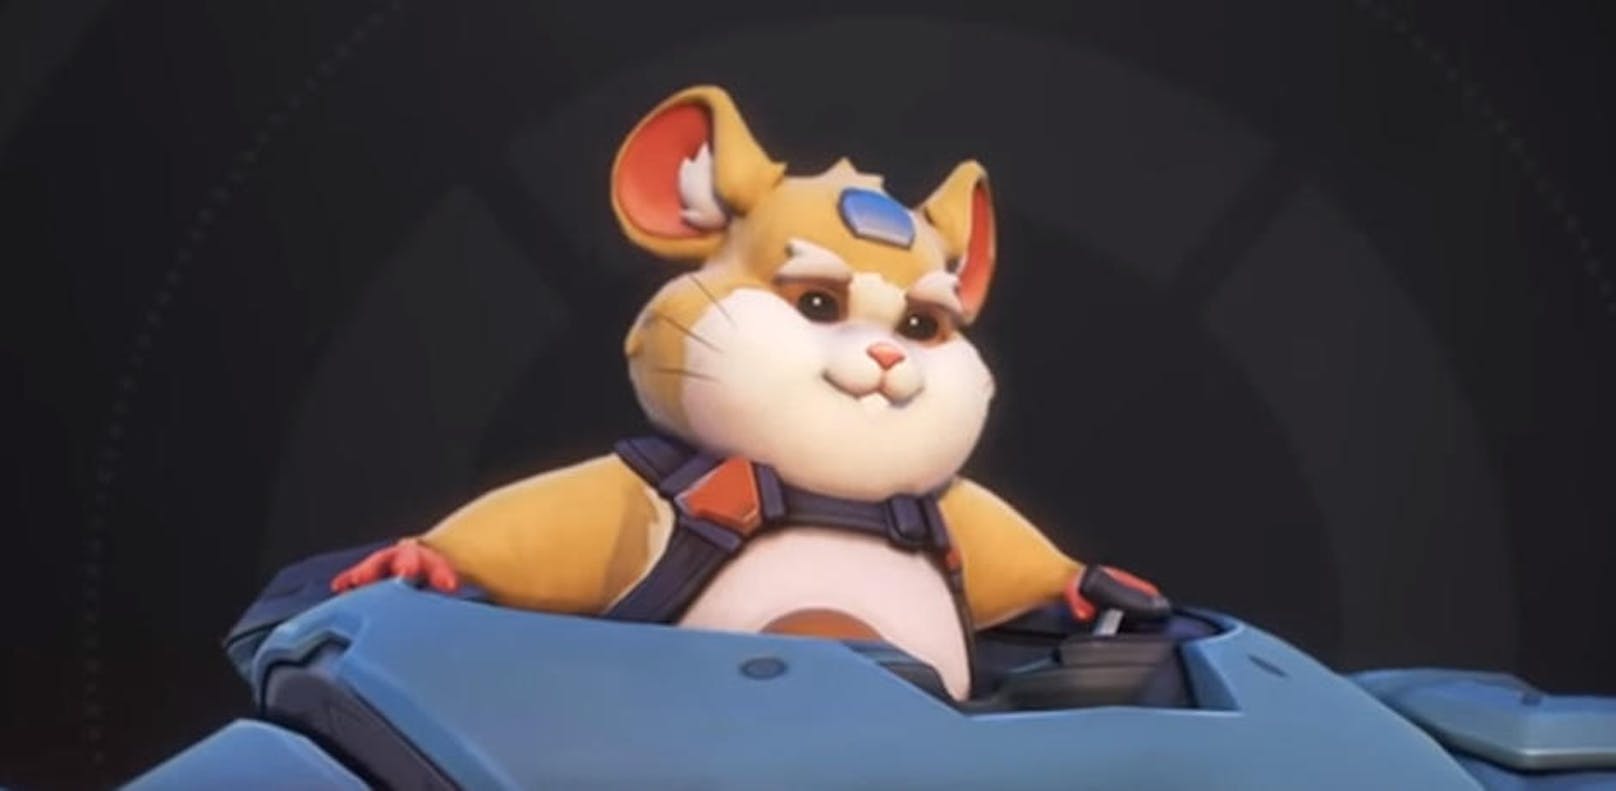 <b>29. Juni 2018:</b> Überraschung im Shooter-Hit Overwatch. Der neue Held Hammond hat sich gezeigt und ist zum Liebling der Spieler avanciert. Kurz nachdem im Ankündigungsvideo ein gewaltiger Kampfroboter auftaucht, öffnet sich plötzlich dessen Cockpit und heraus schaut ein süßer Hamster. Fähigkeiten oder ein Release-Datum gibt es noch nicht, auch fehlt noch die Blizzard-Bestätigung, dass der Hamster tatsächlich Hammond heißen wird.